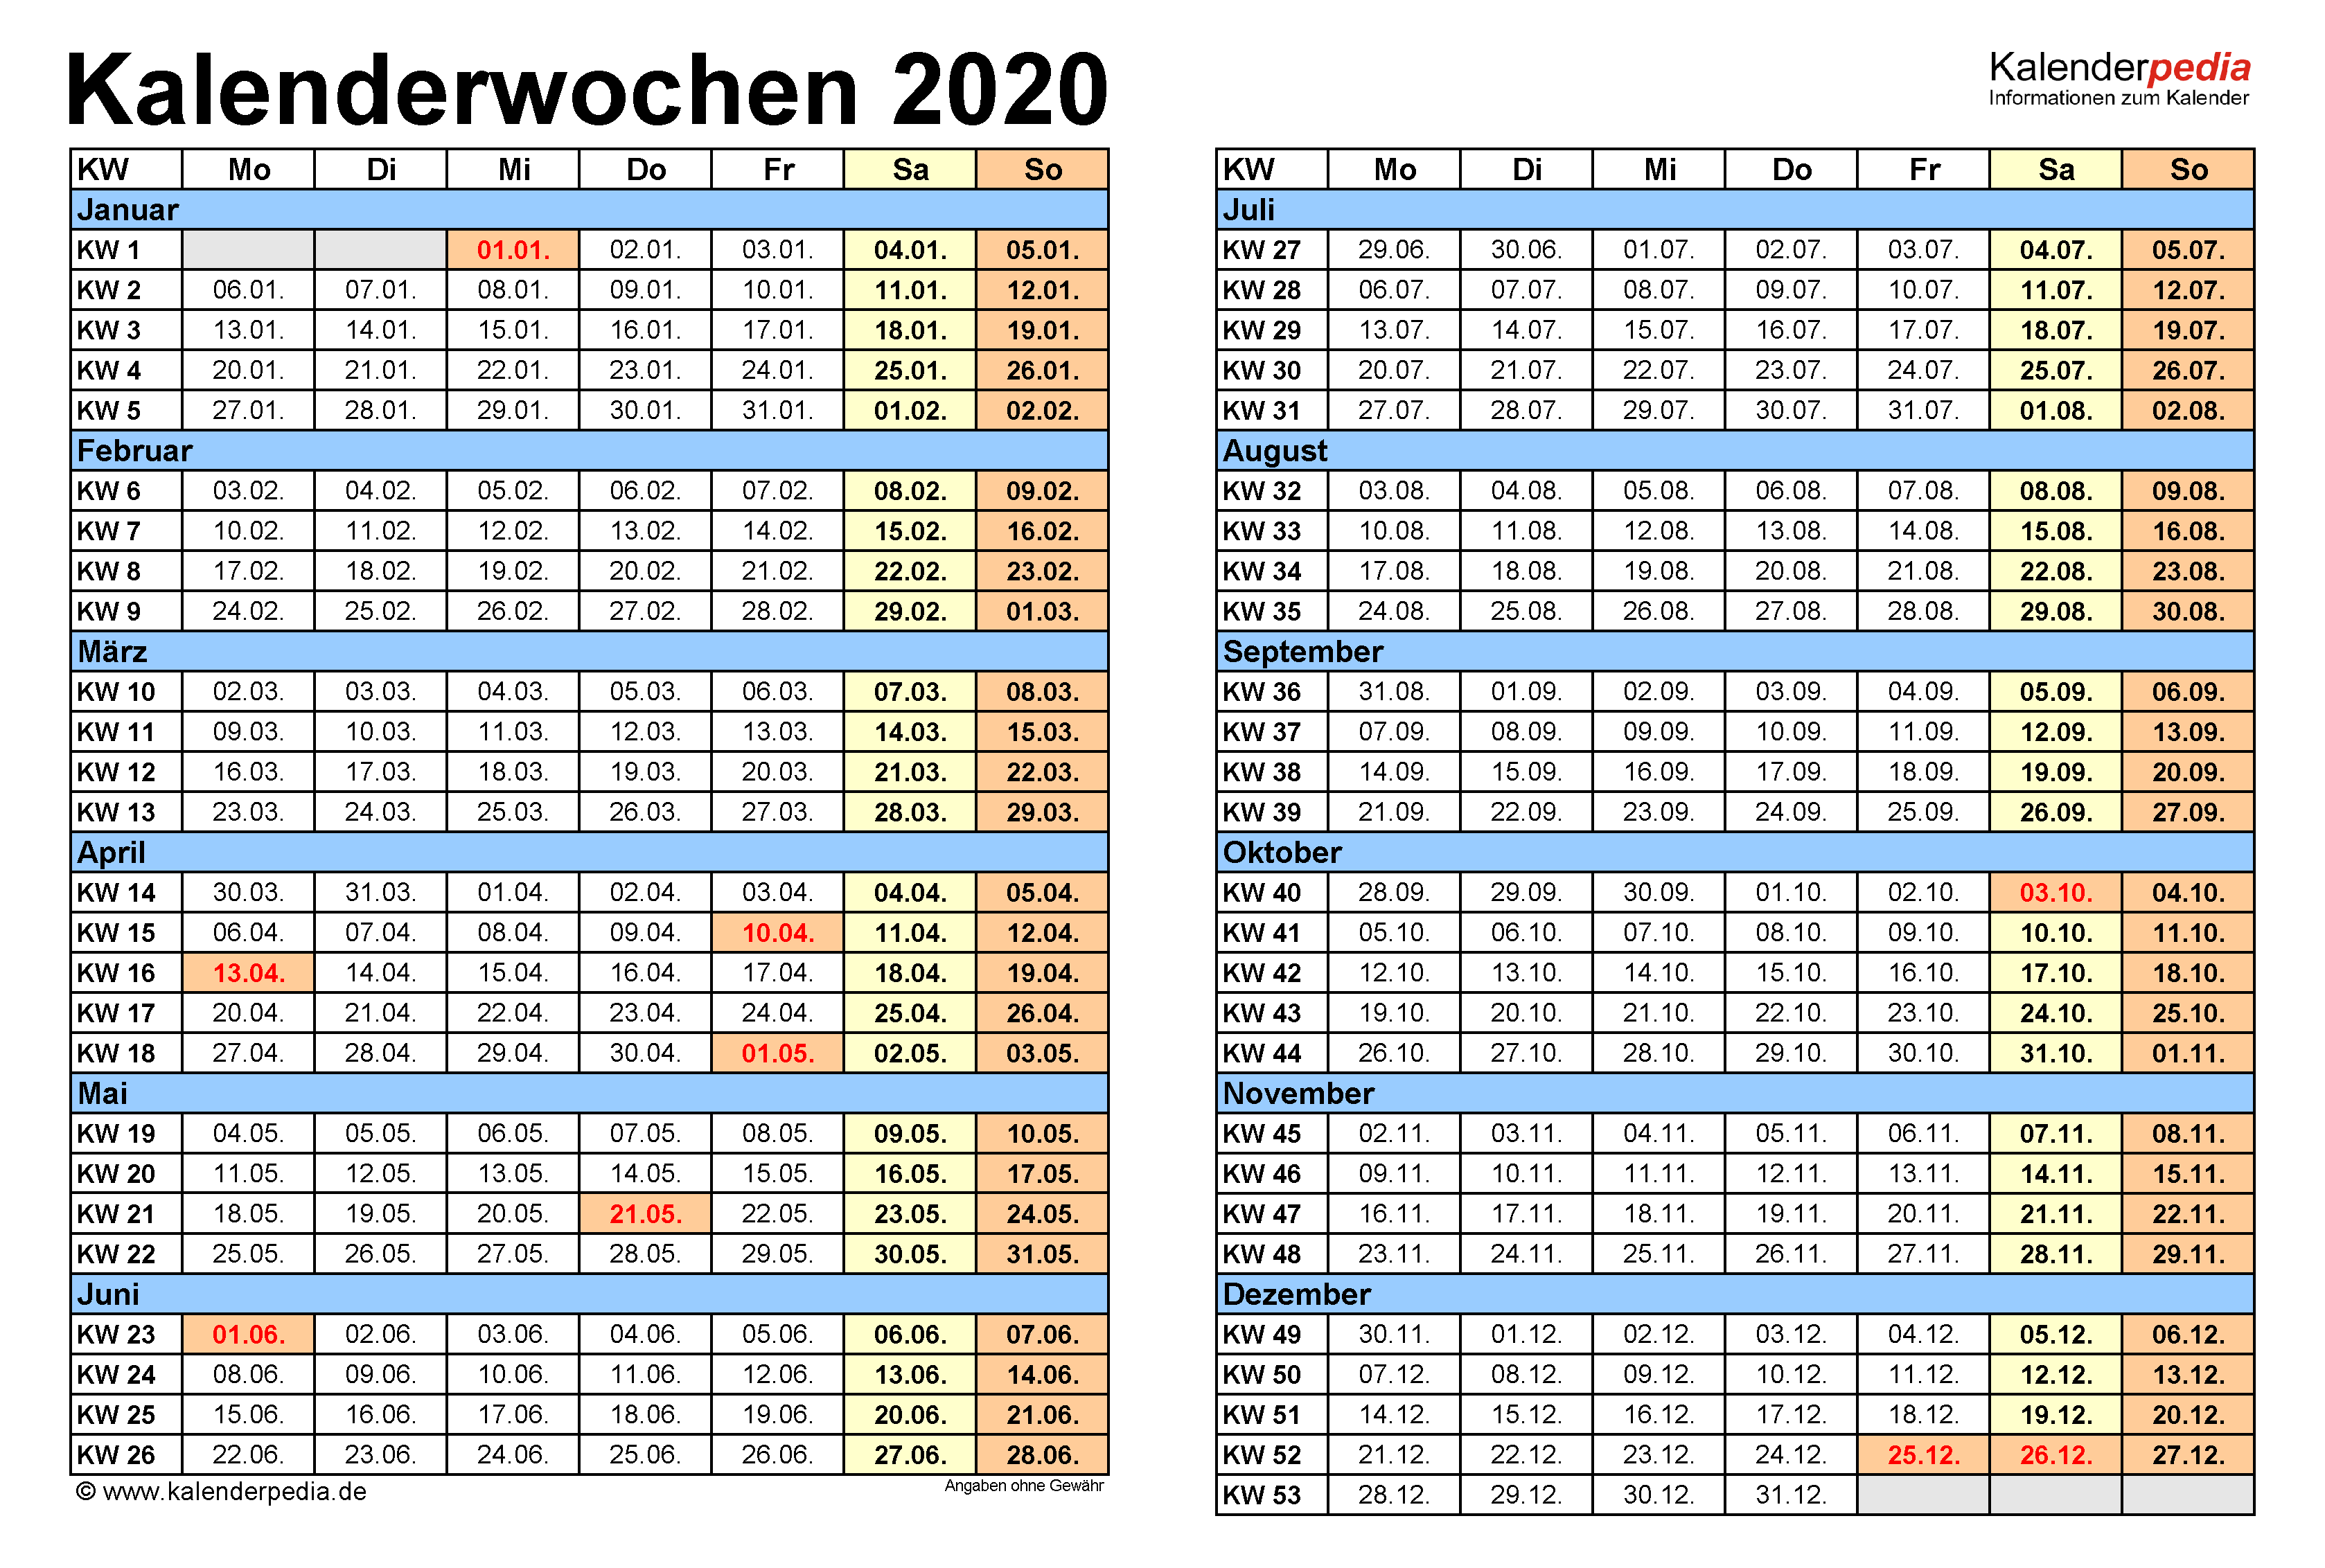 13 kalenderwoche 2020 | In welcher Kalenderwoche (KW ...